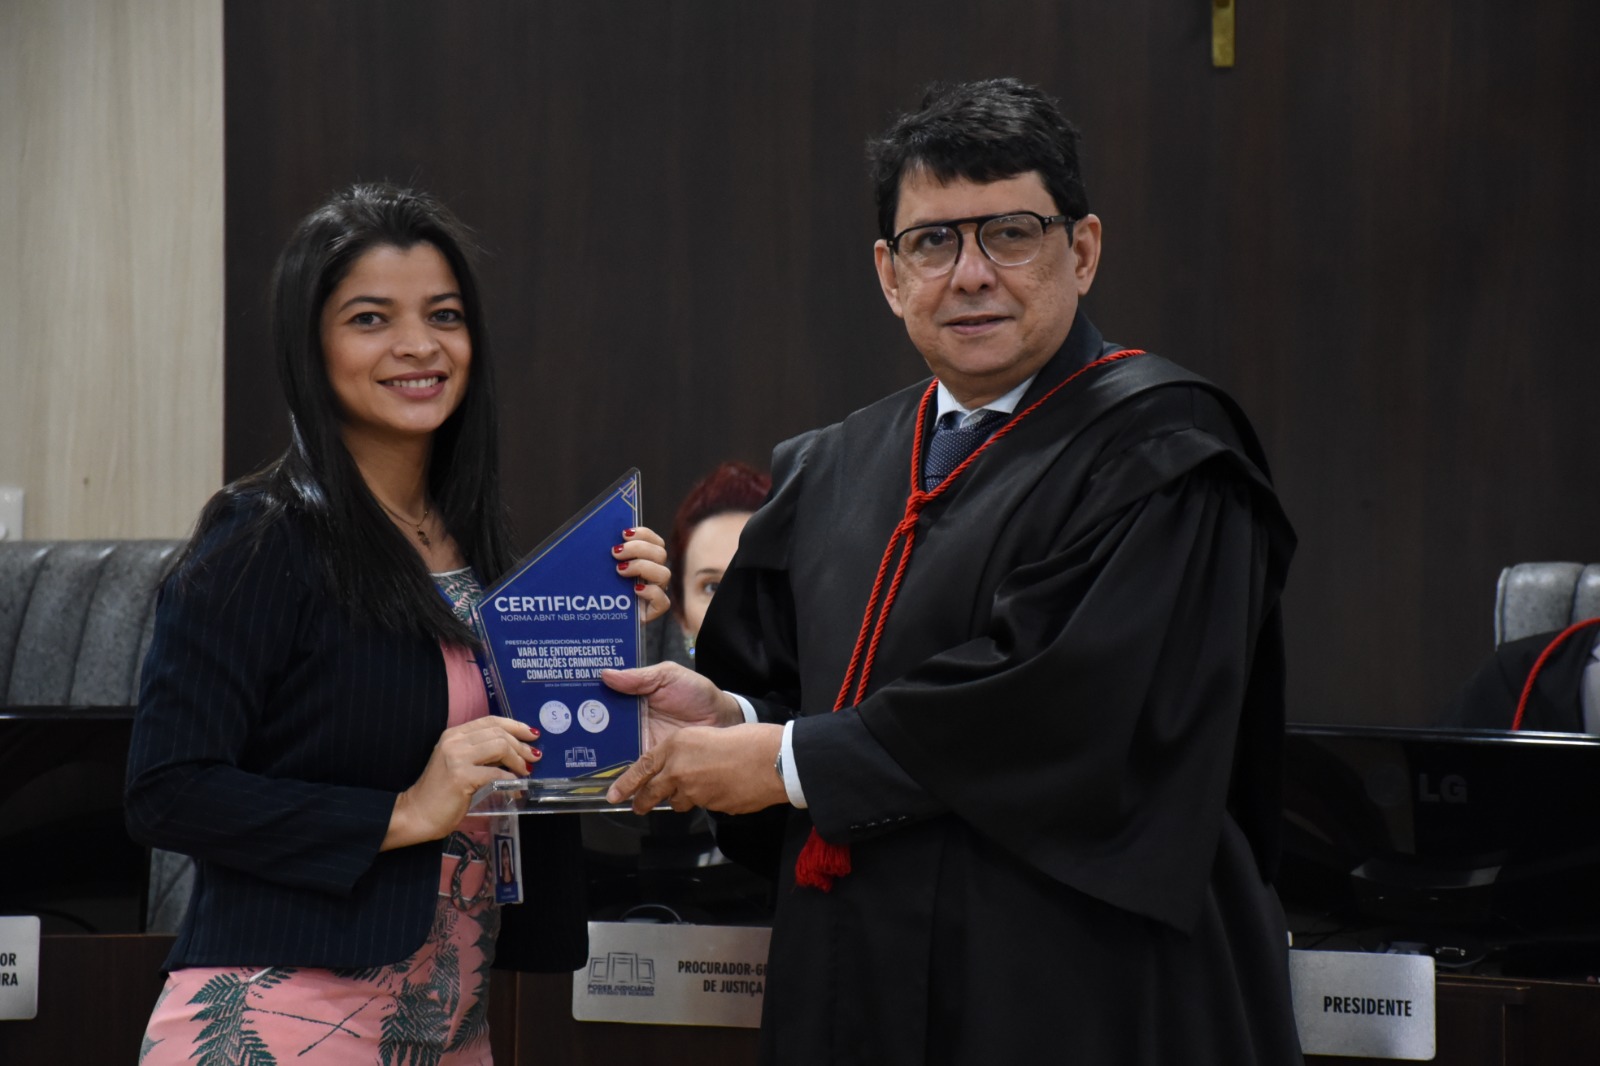 Imagem  colorida mostra o desembargador Jesus Nascimento, posando para a foto ao lado de uma servidora do Tribunal, ambos seguram o troféu certificado de qualidade de serviços prestados.